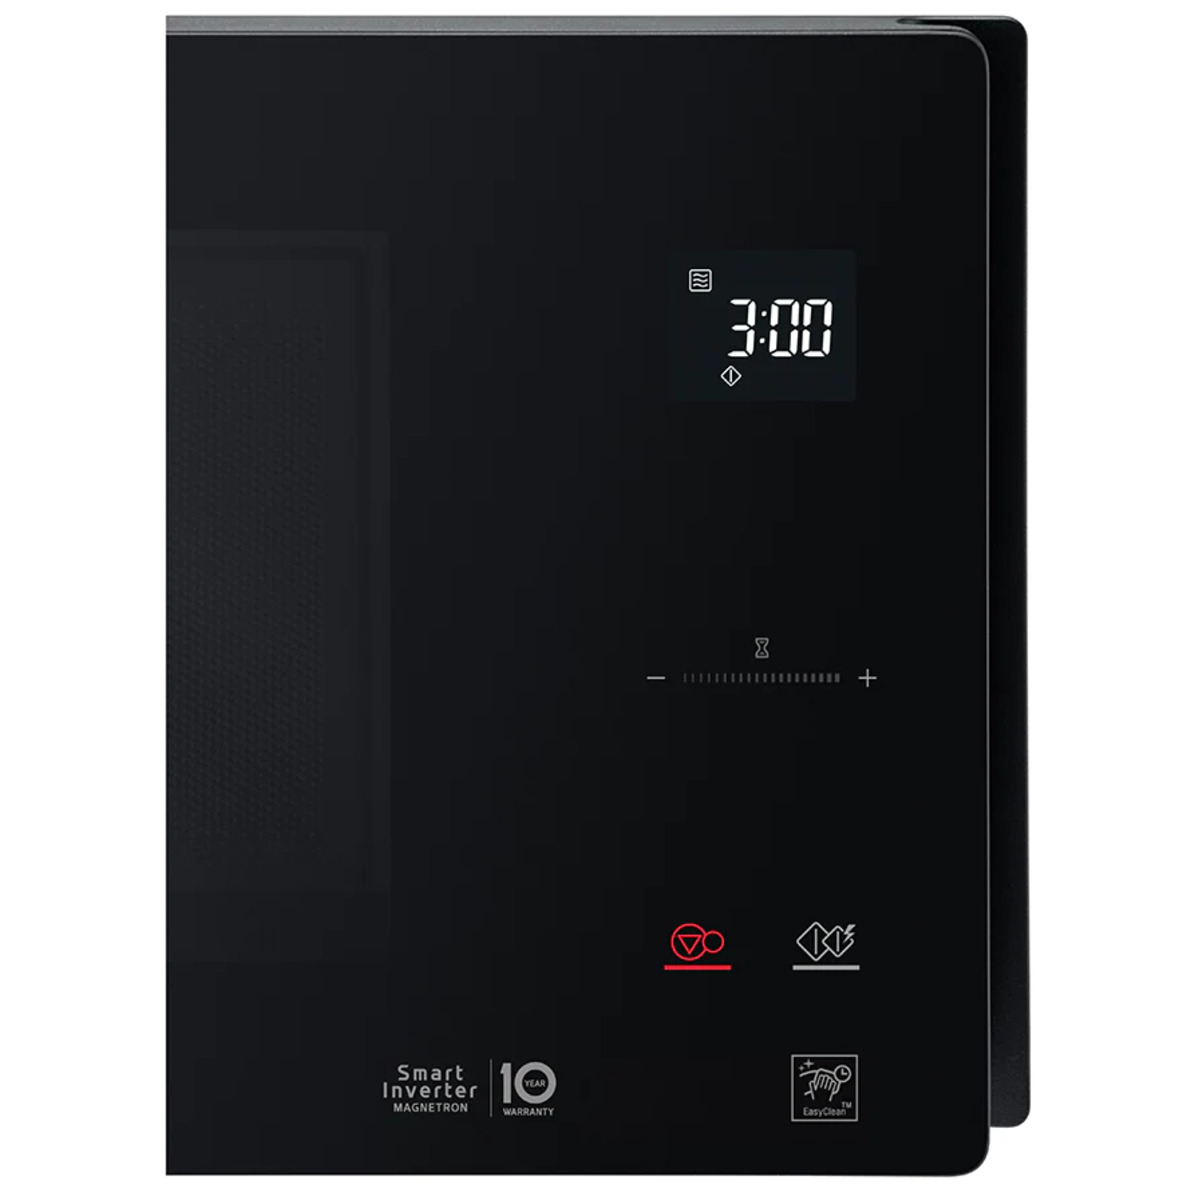 Микроволновая печь LG MS2595DIS, черный